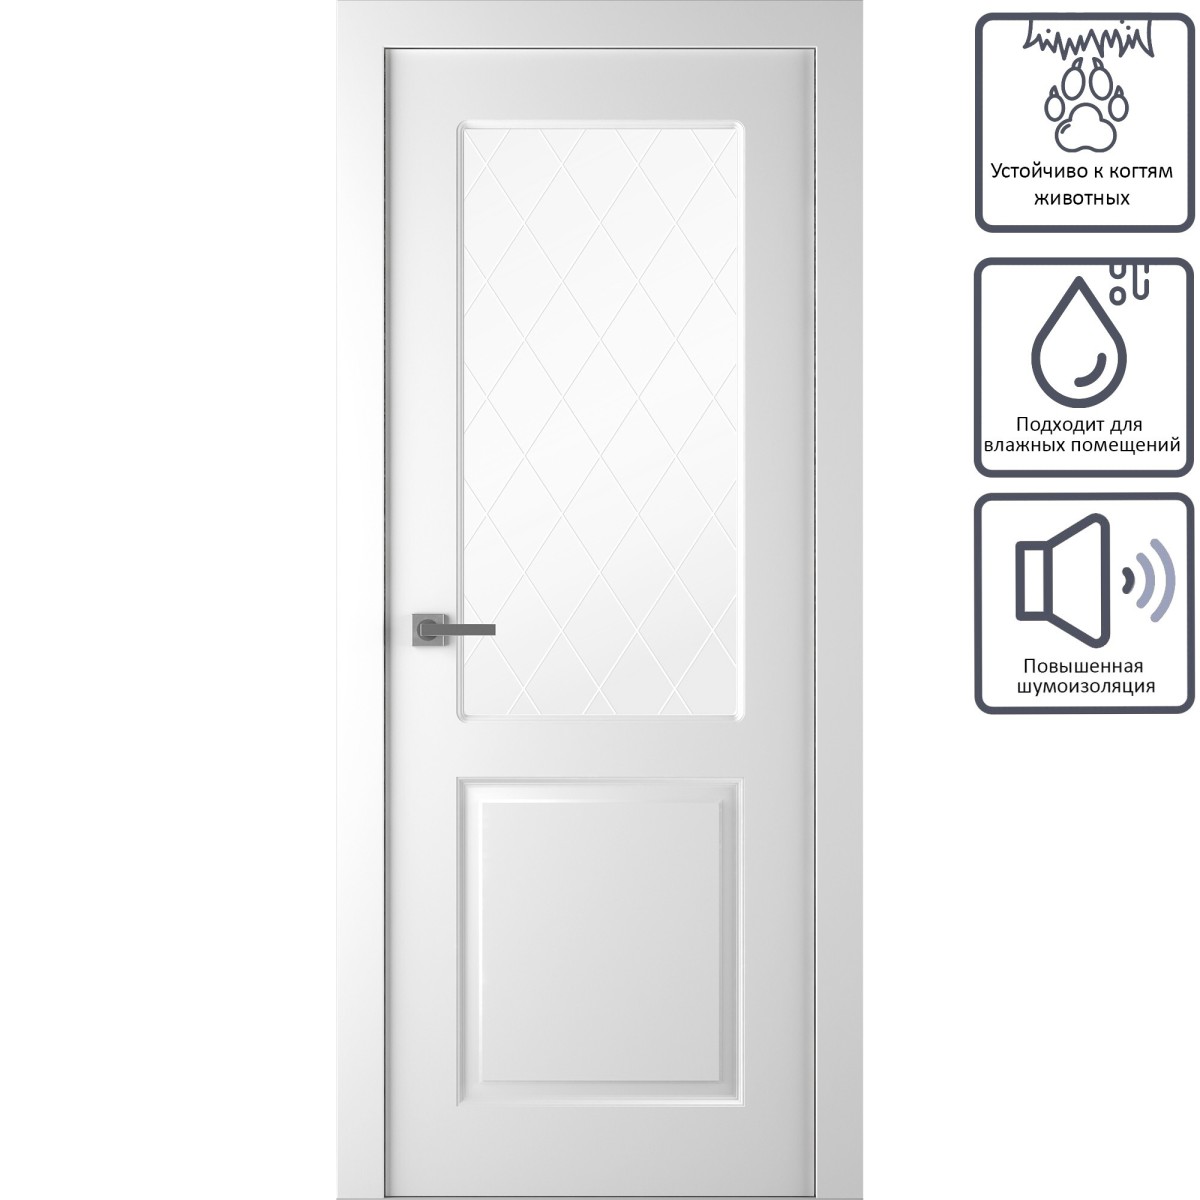 Дверь межкомнатная остеклённая Австралия, 200x70 см, эмаль, цвет белый, с фурнитурой